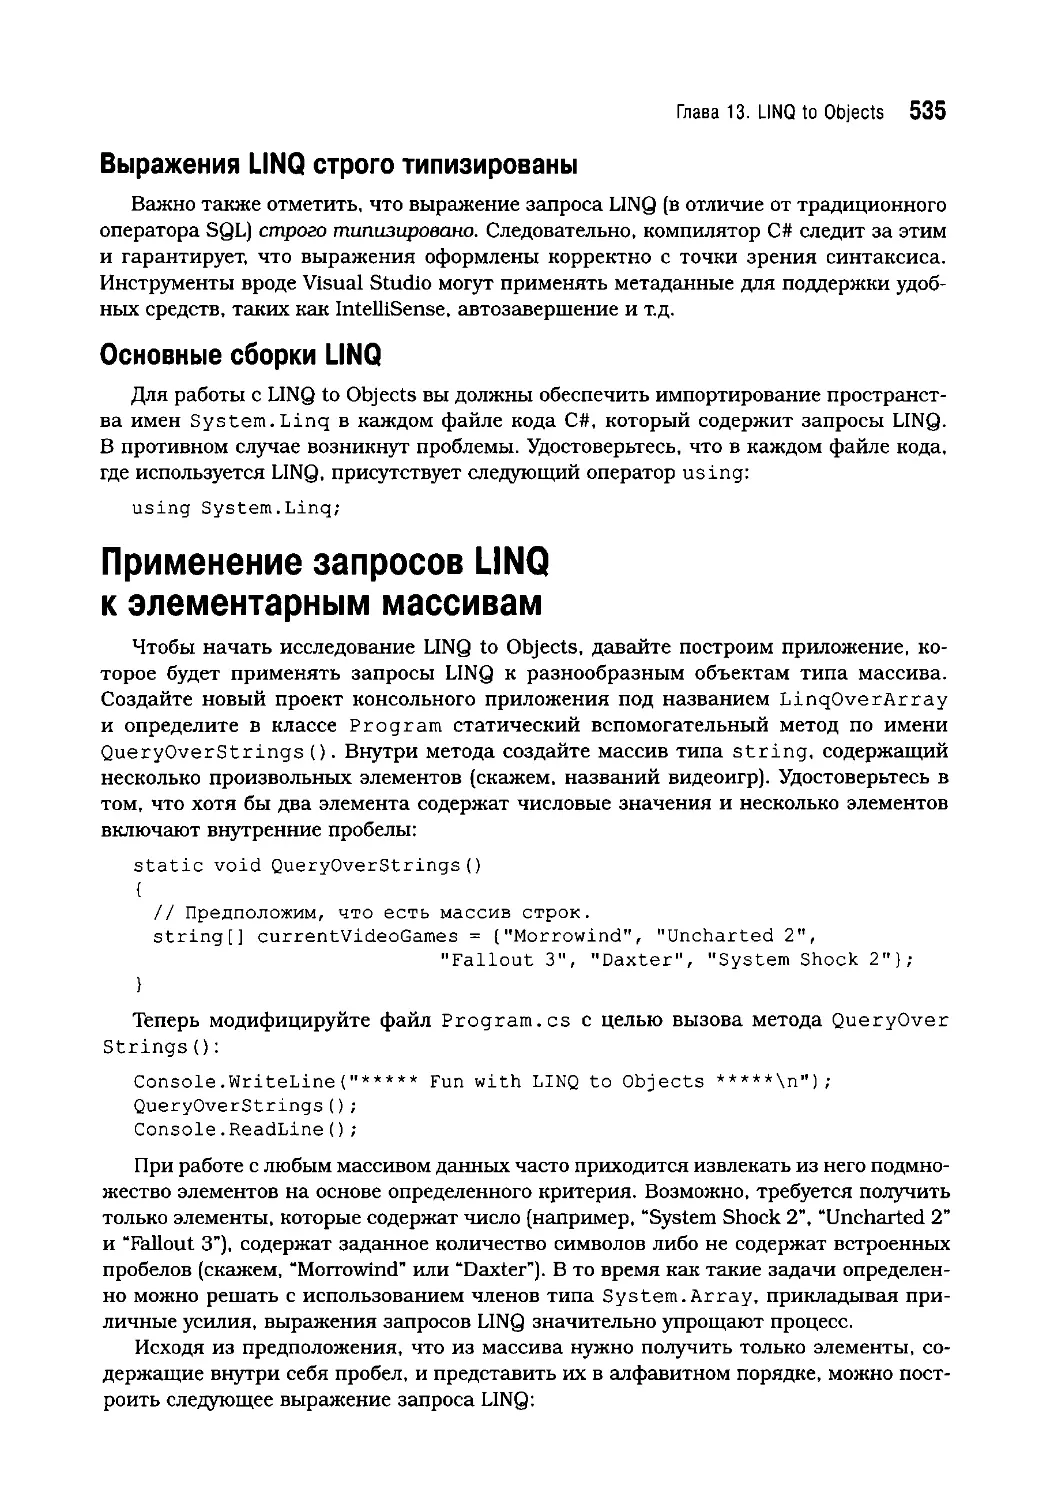 Основные сборки LINQ
Применение запросов LINQ к элементарным массивам